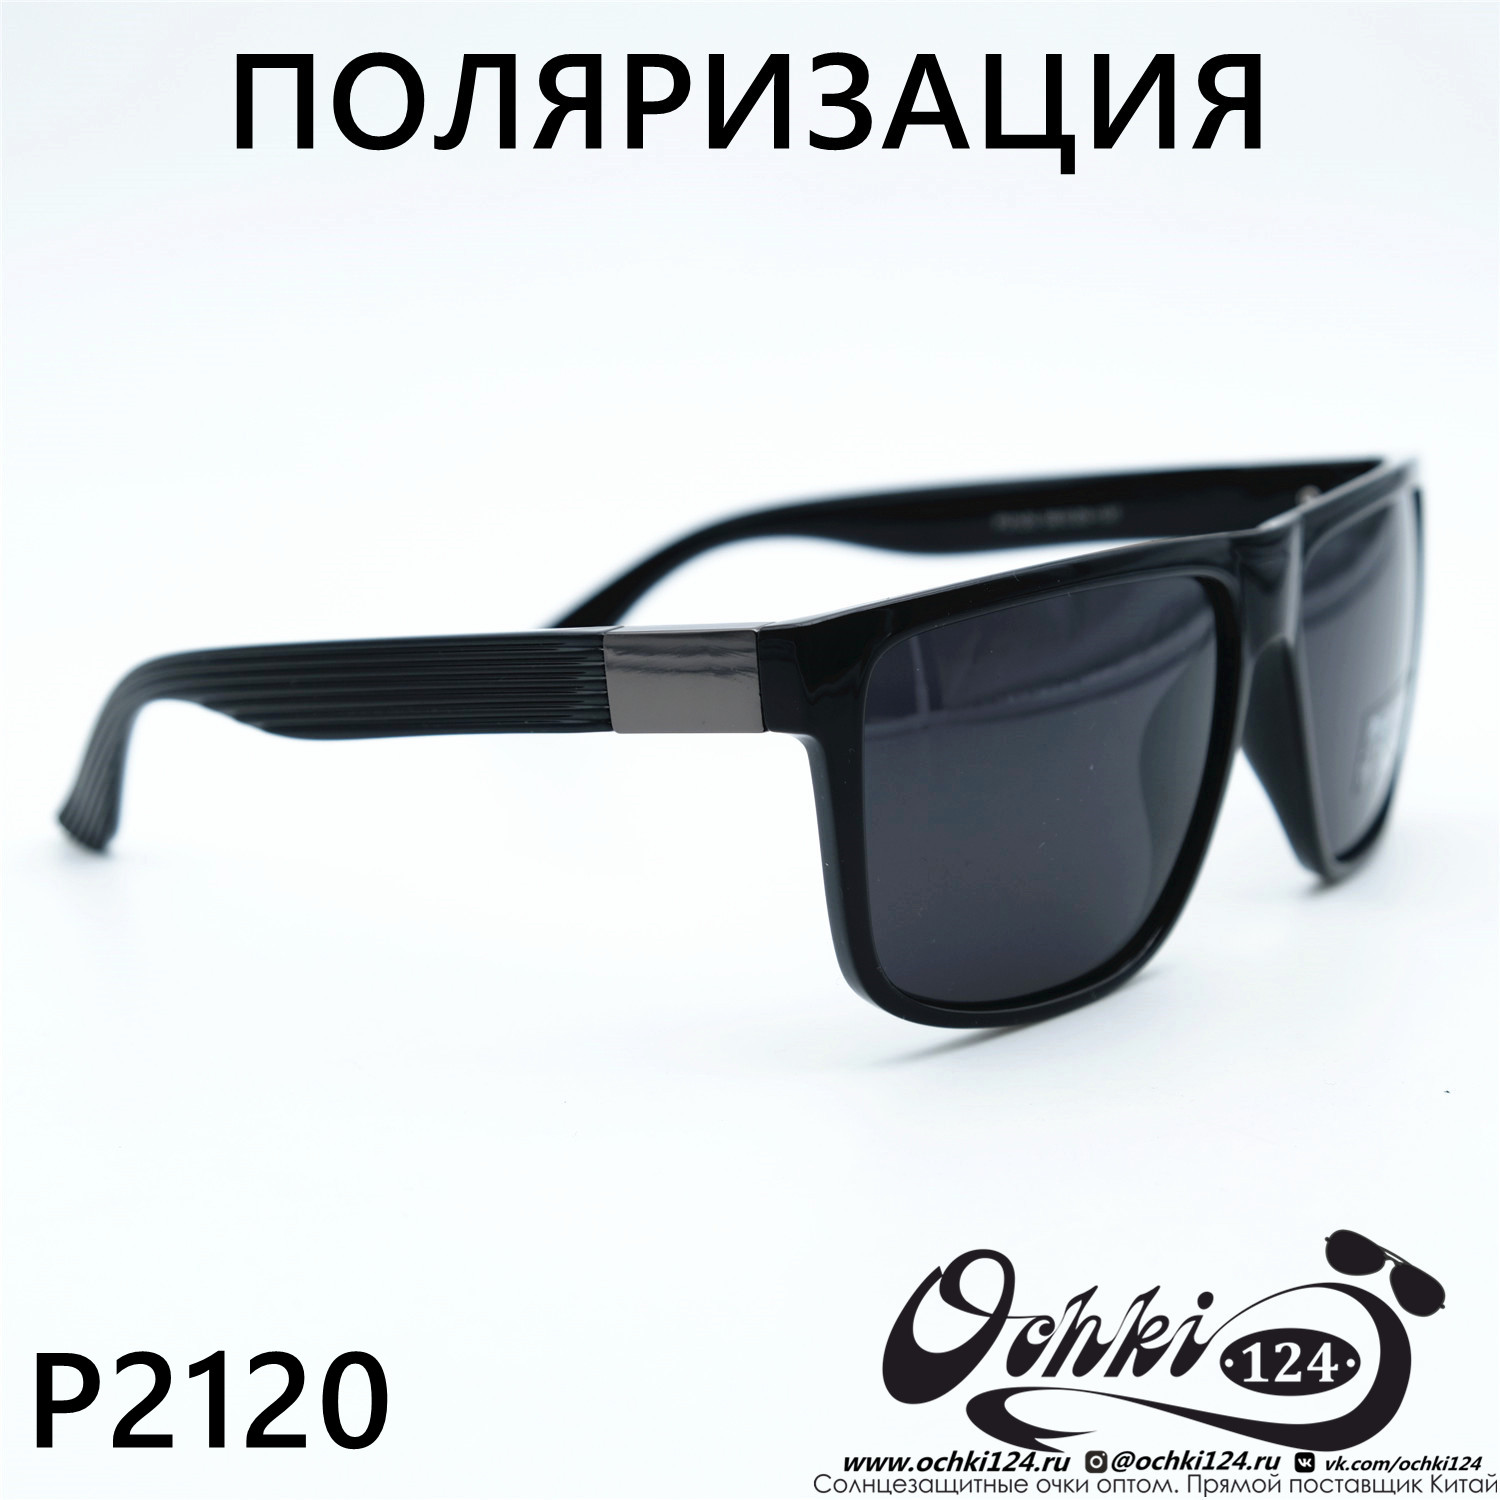  Солнцезащитные очки картинка 2023 Мужские Стандартные Polarized P2120-C1 